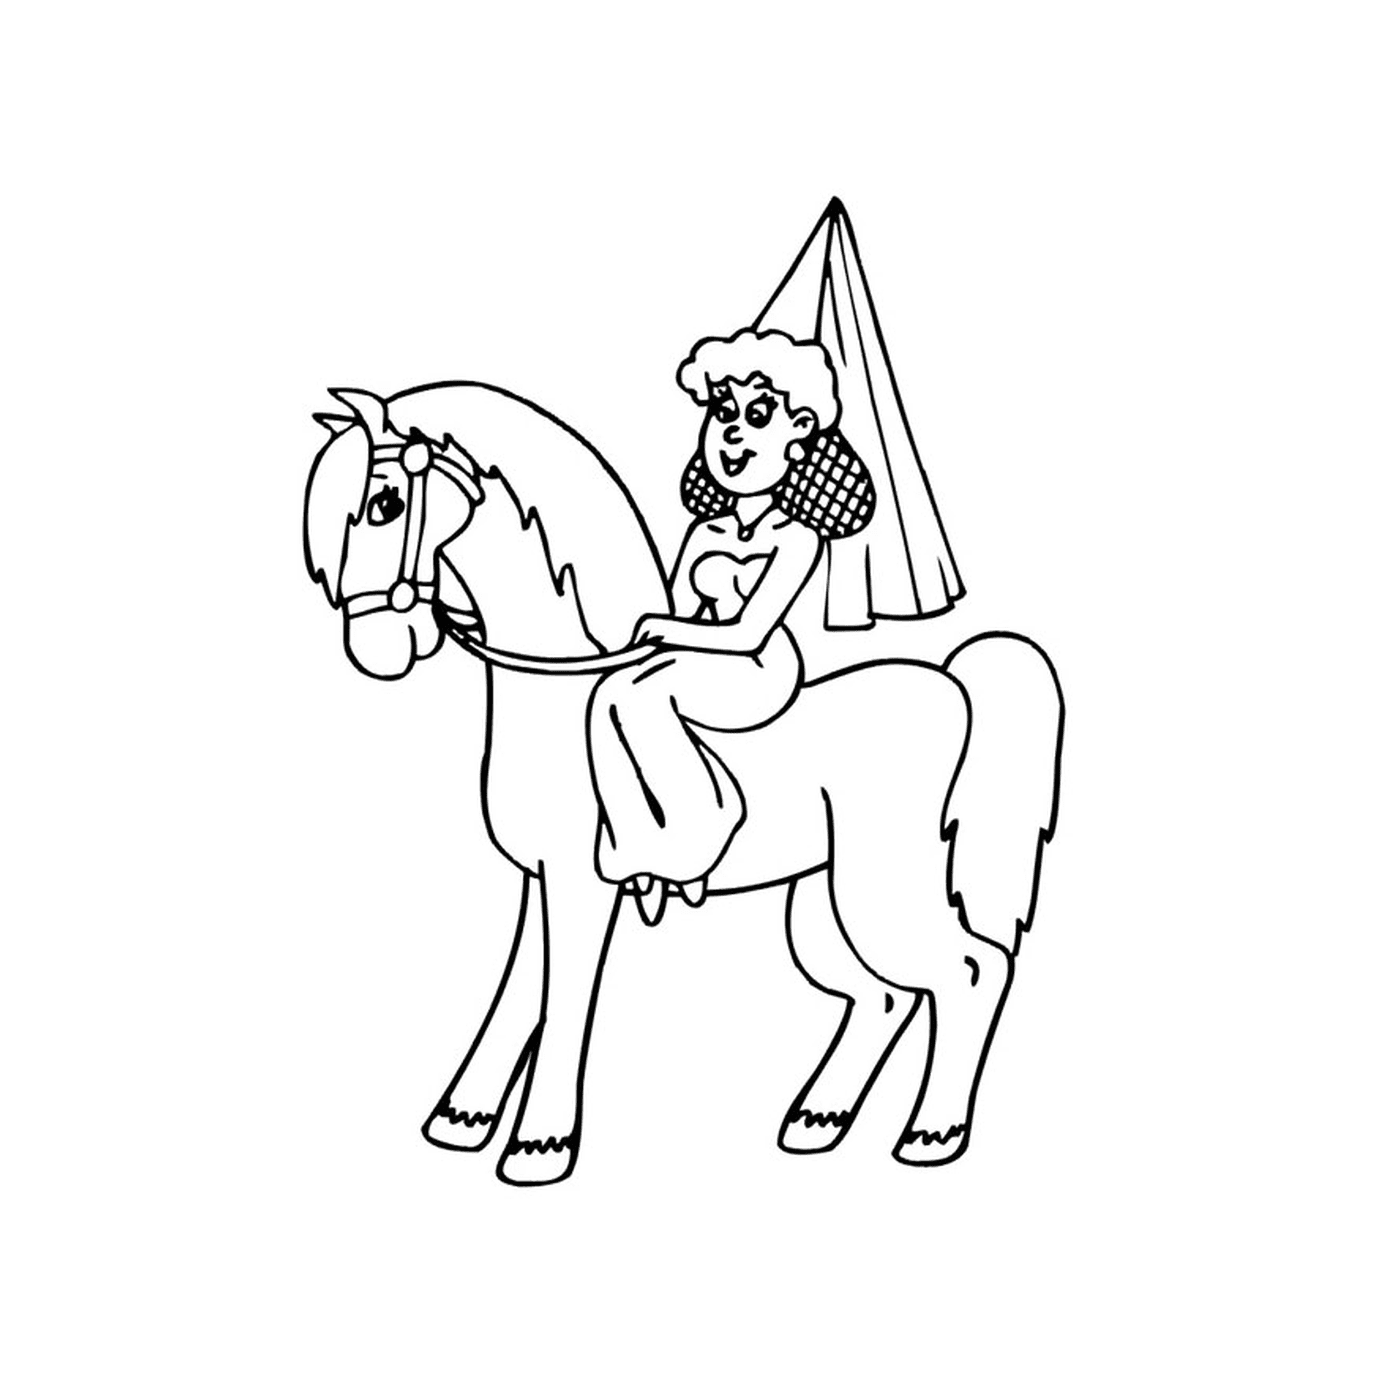  Pessoa sentada em um cavalo princesa 